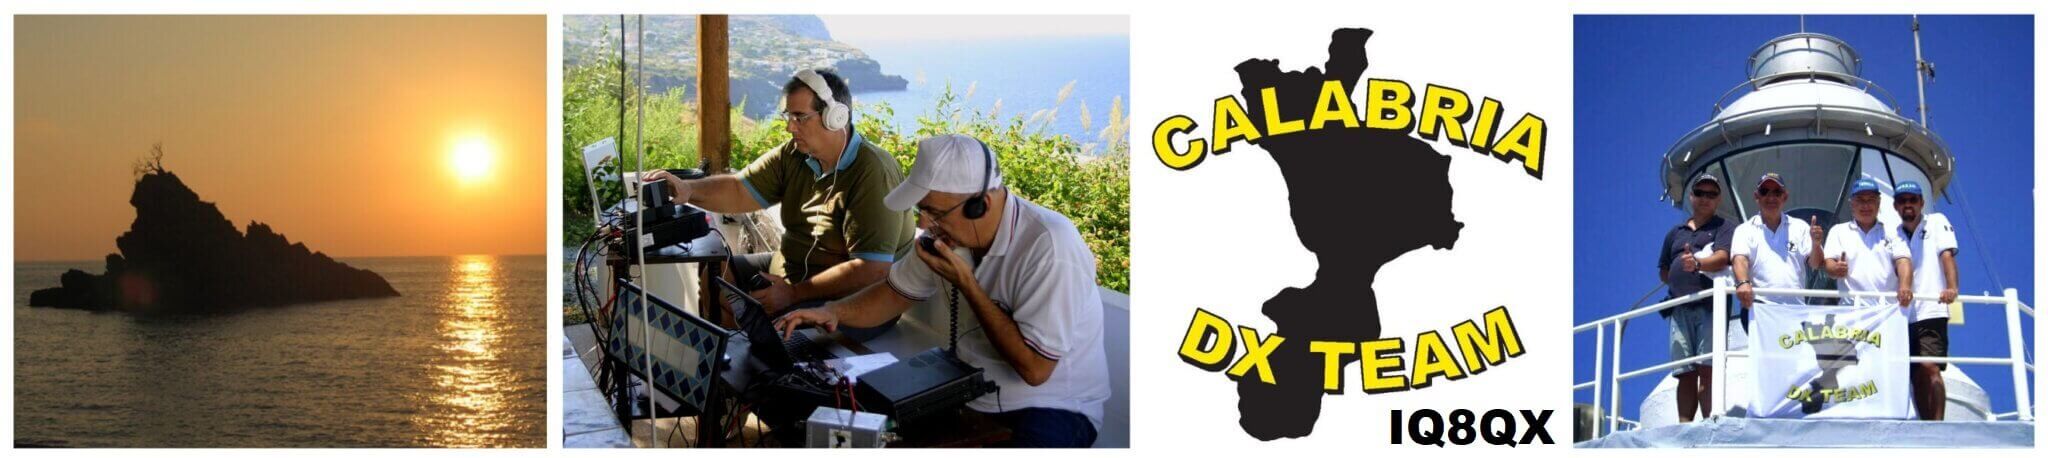 web site Calabria DX Team